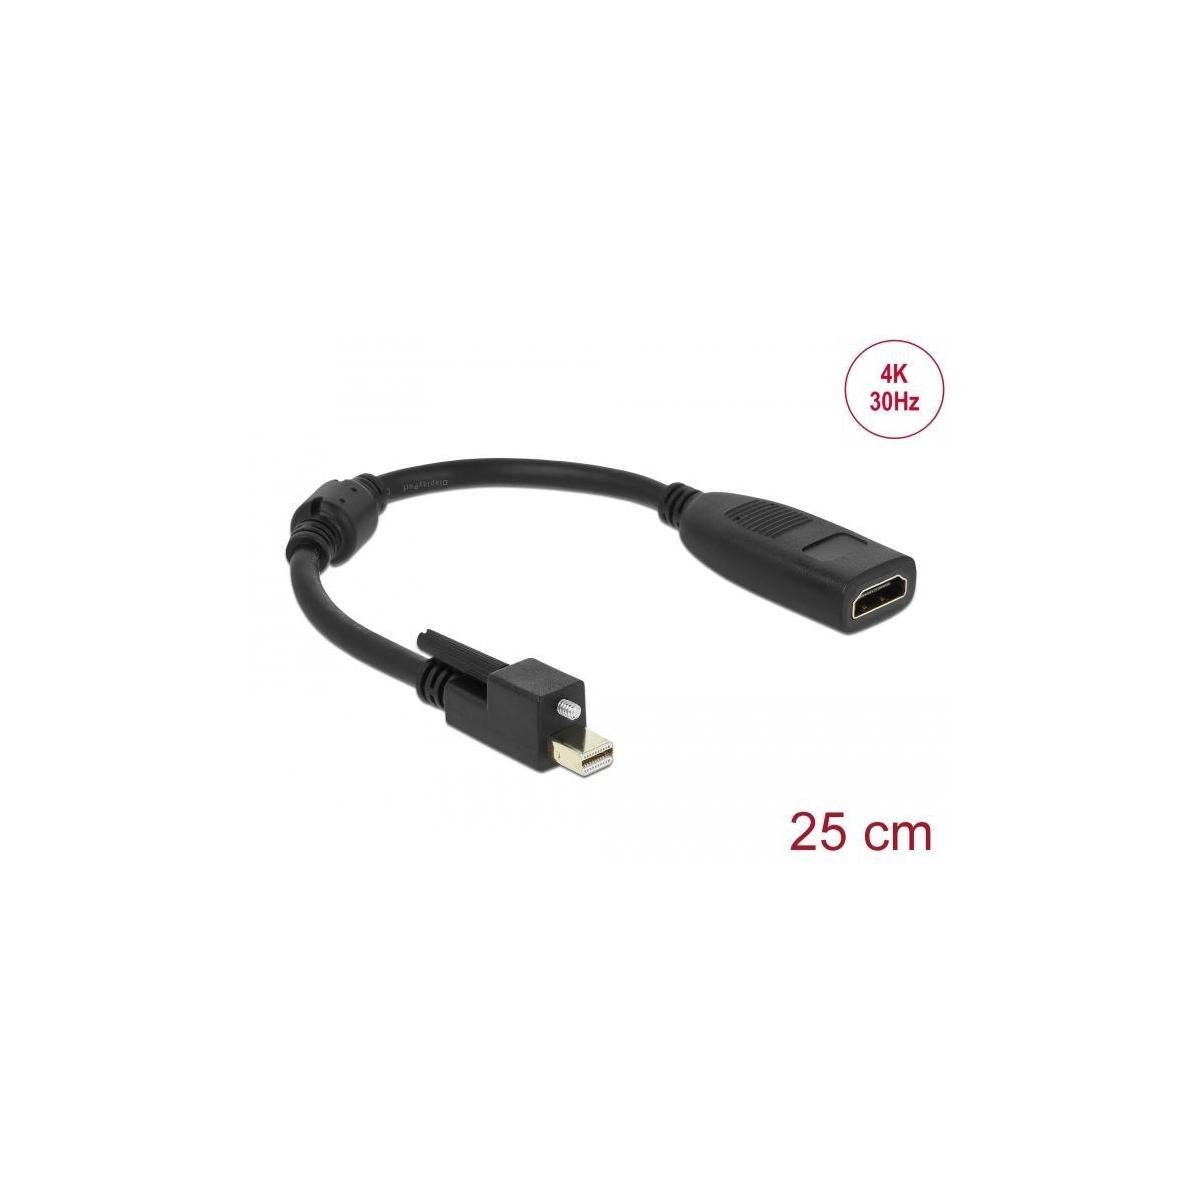 Delock Adapter mini DisplayPort 1.2 Stecker > HDMI Buchse 4K... Computer-Kabel, Display Port Mini, HDMI